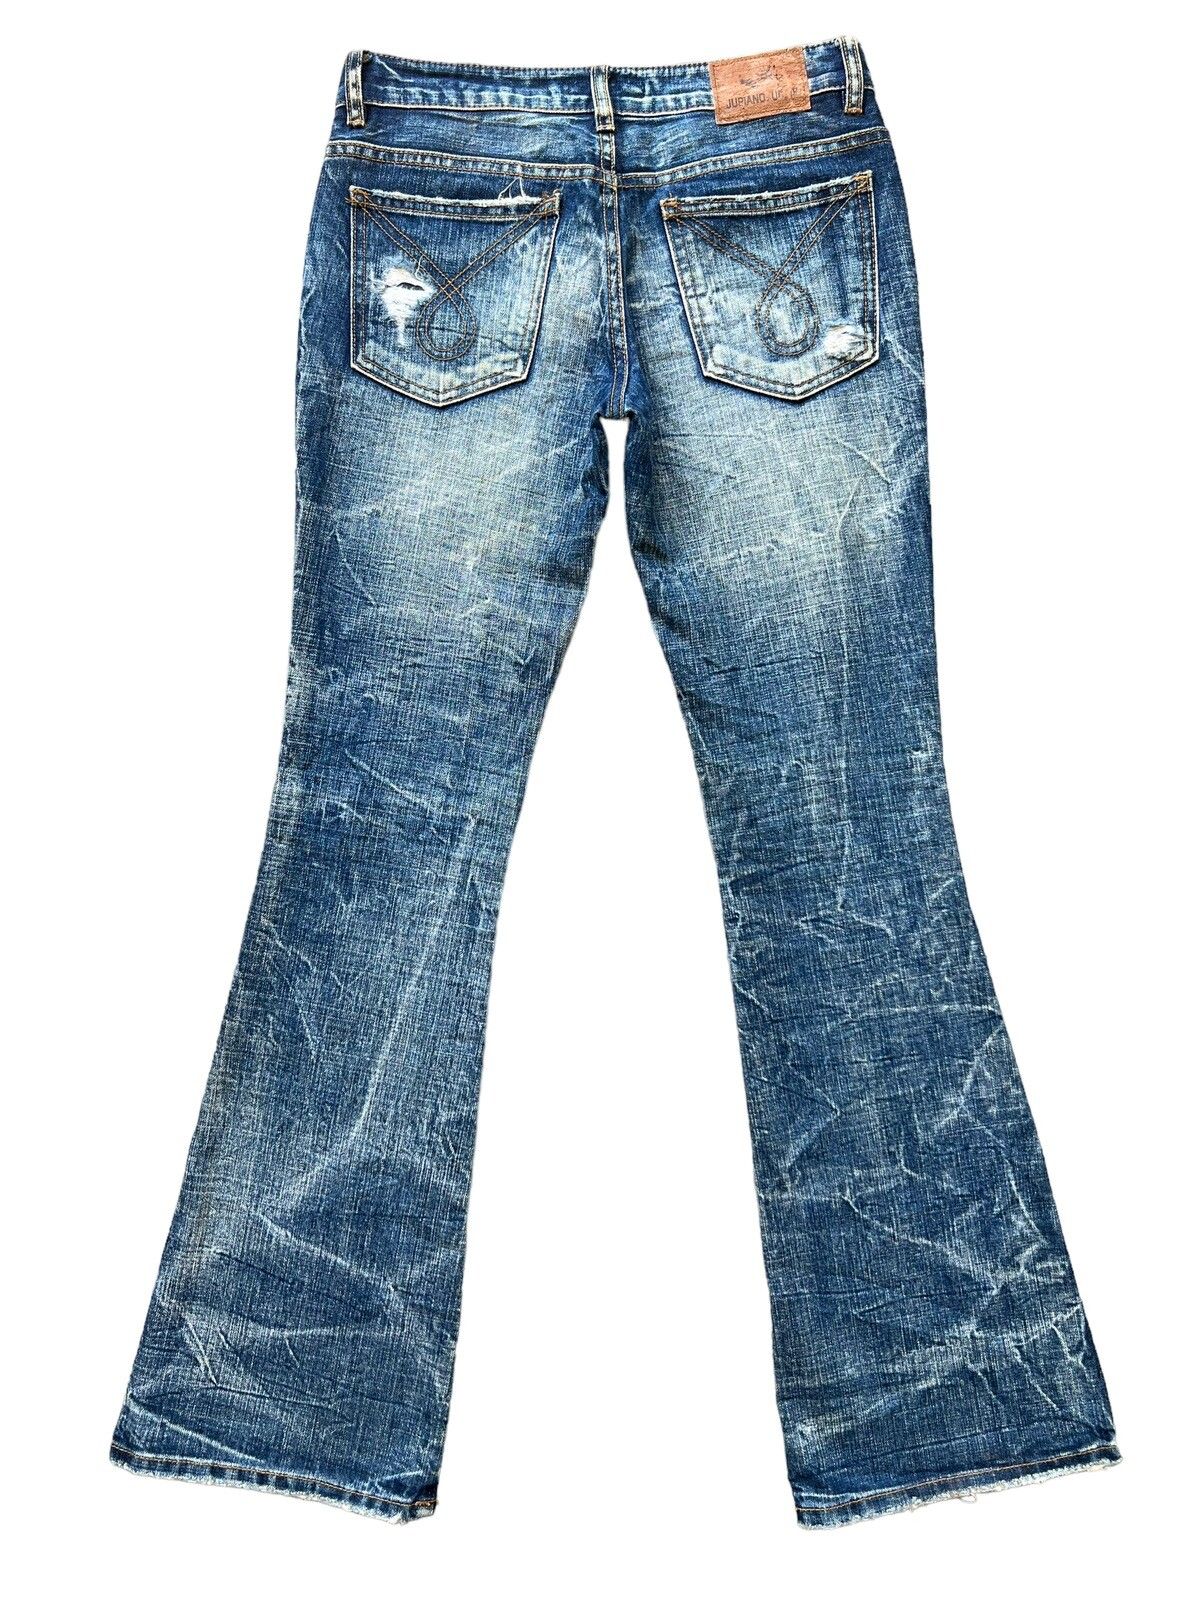 Distressed Denim - Juriano Jurrie Distressed Boot Cut Flare Denim Jeans 29x31 - 3